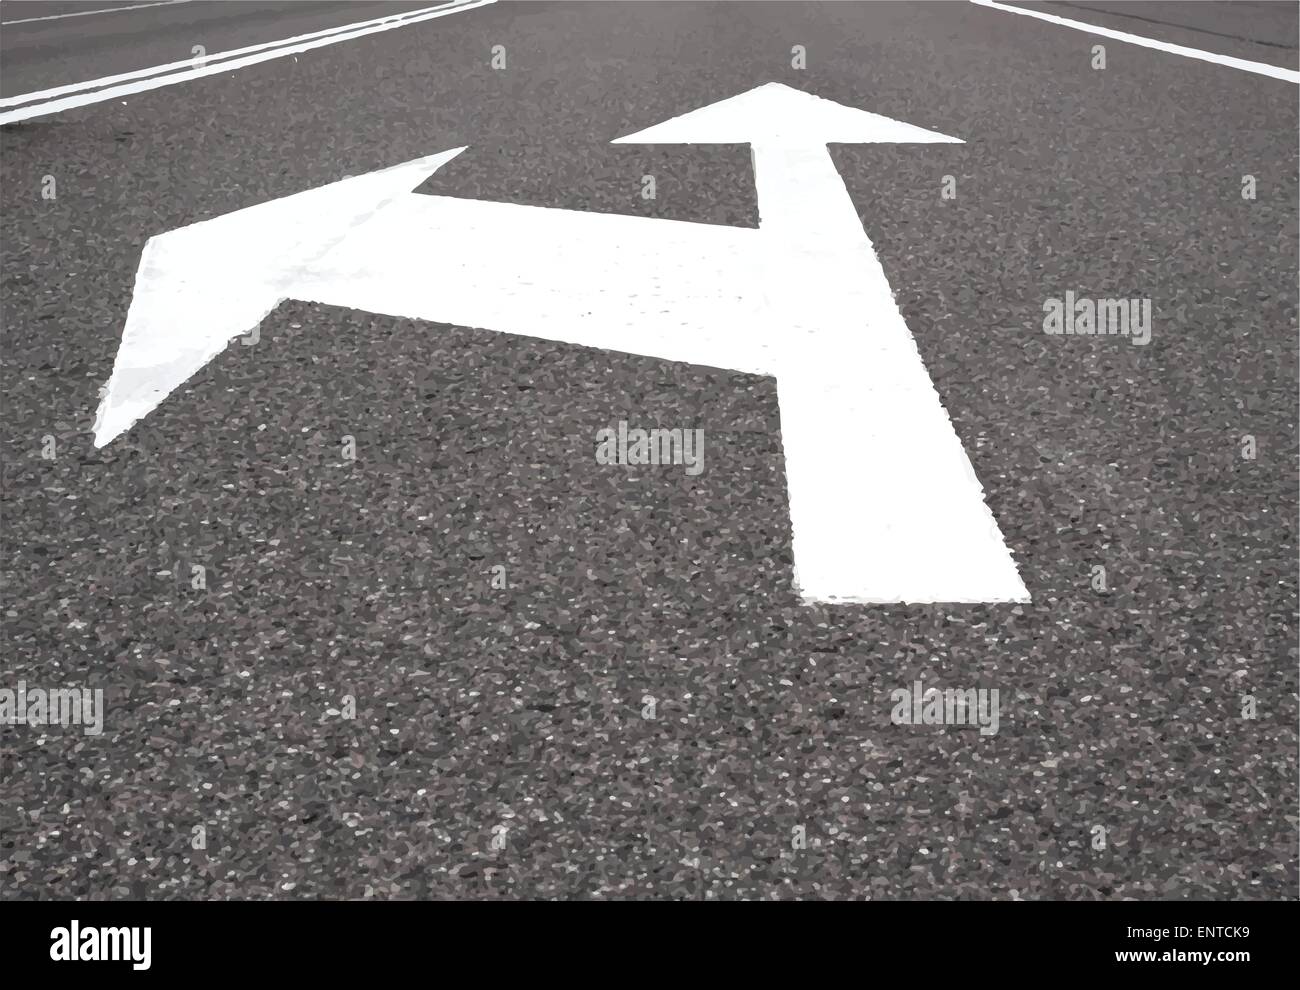 Mostrar flecha blanca a la izquierda y todo recto negro asfalto de carretera. Ilustración del Vector